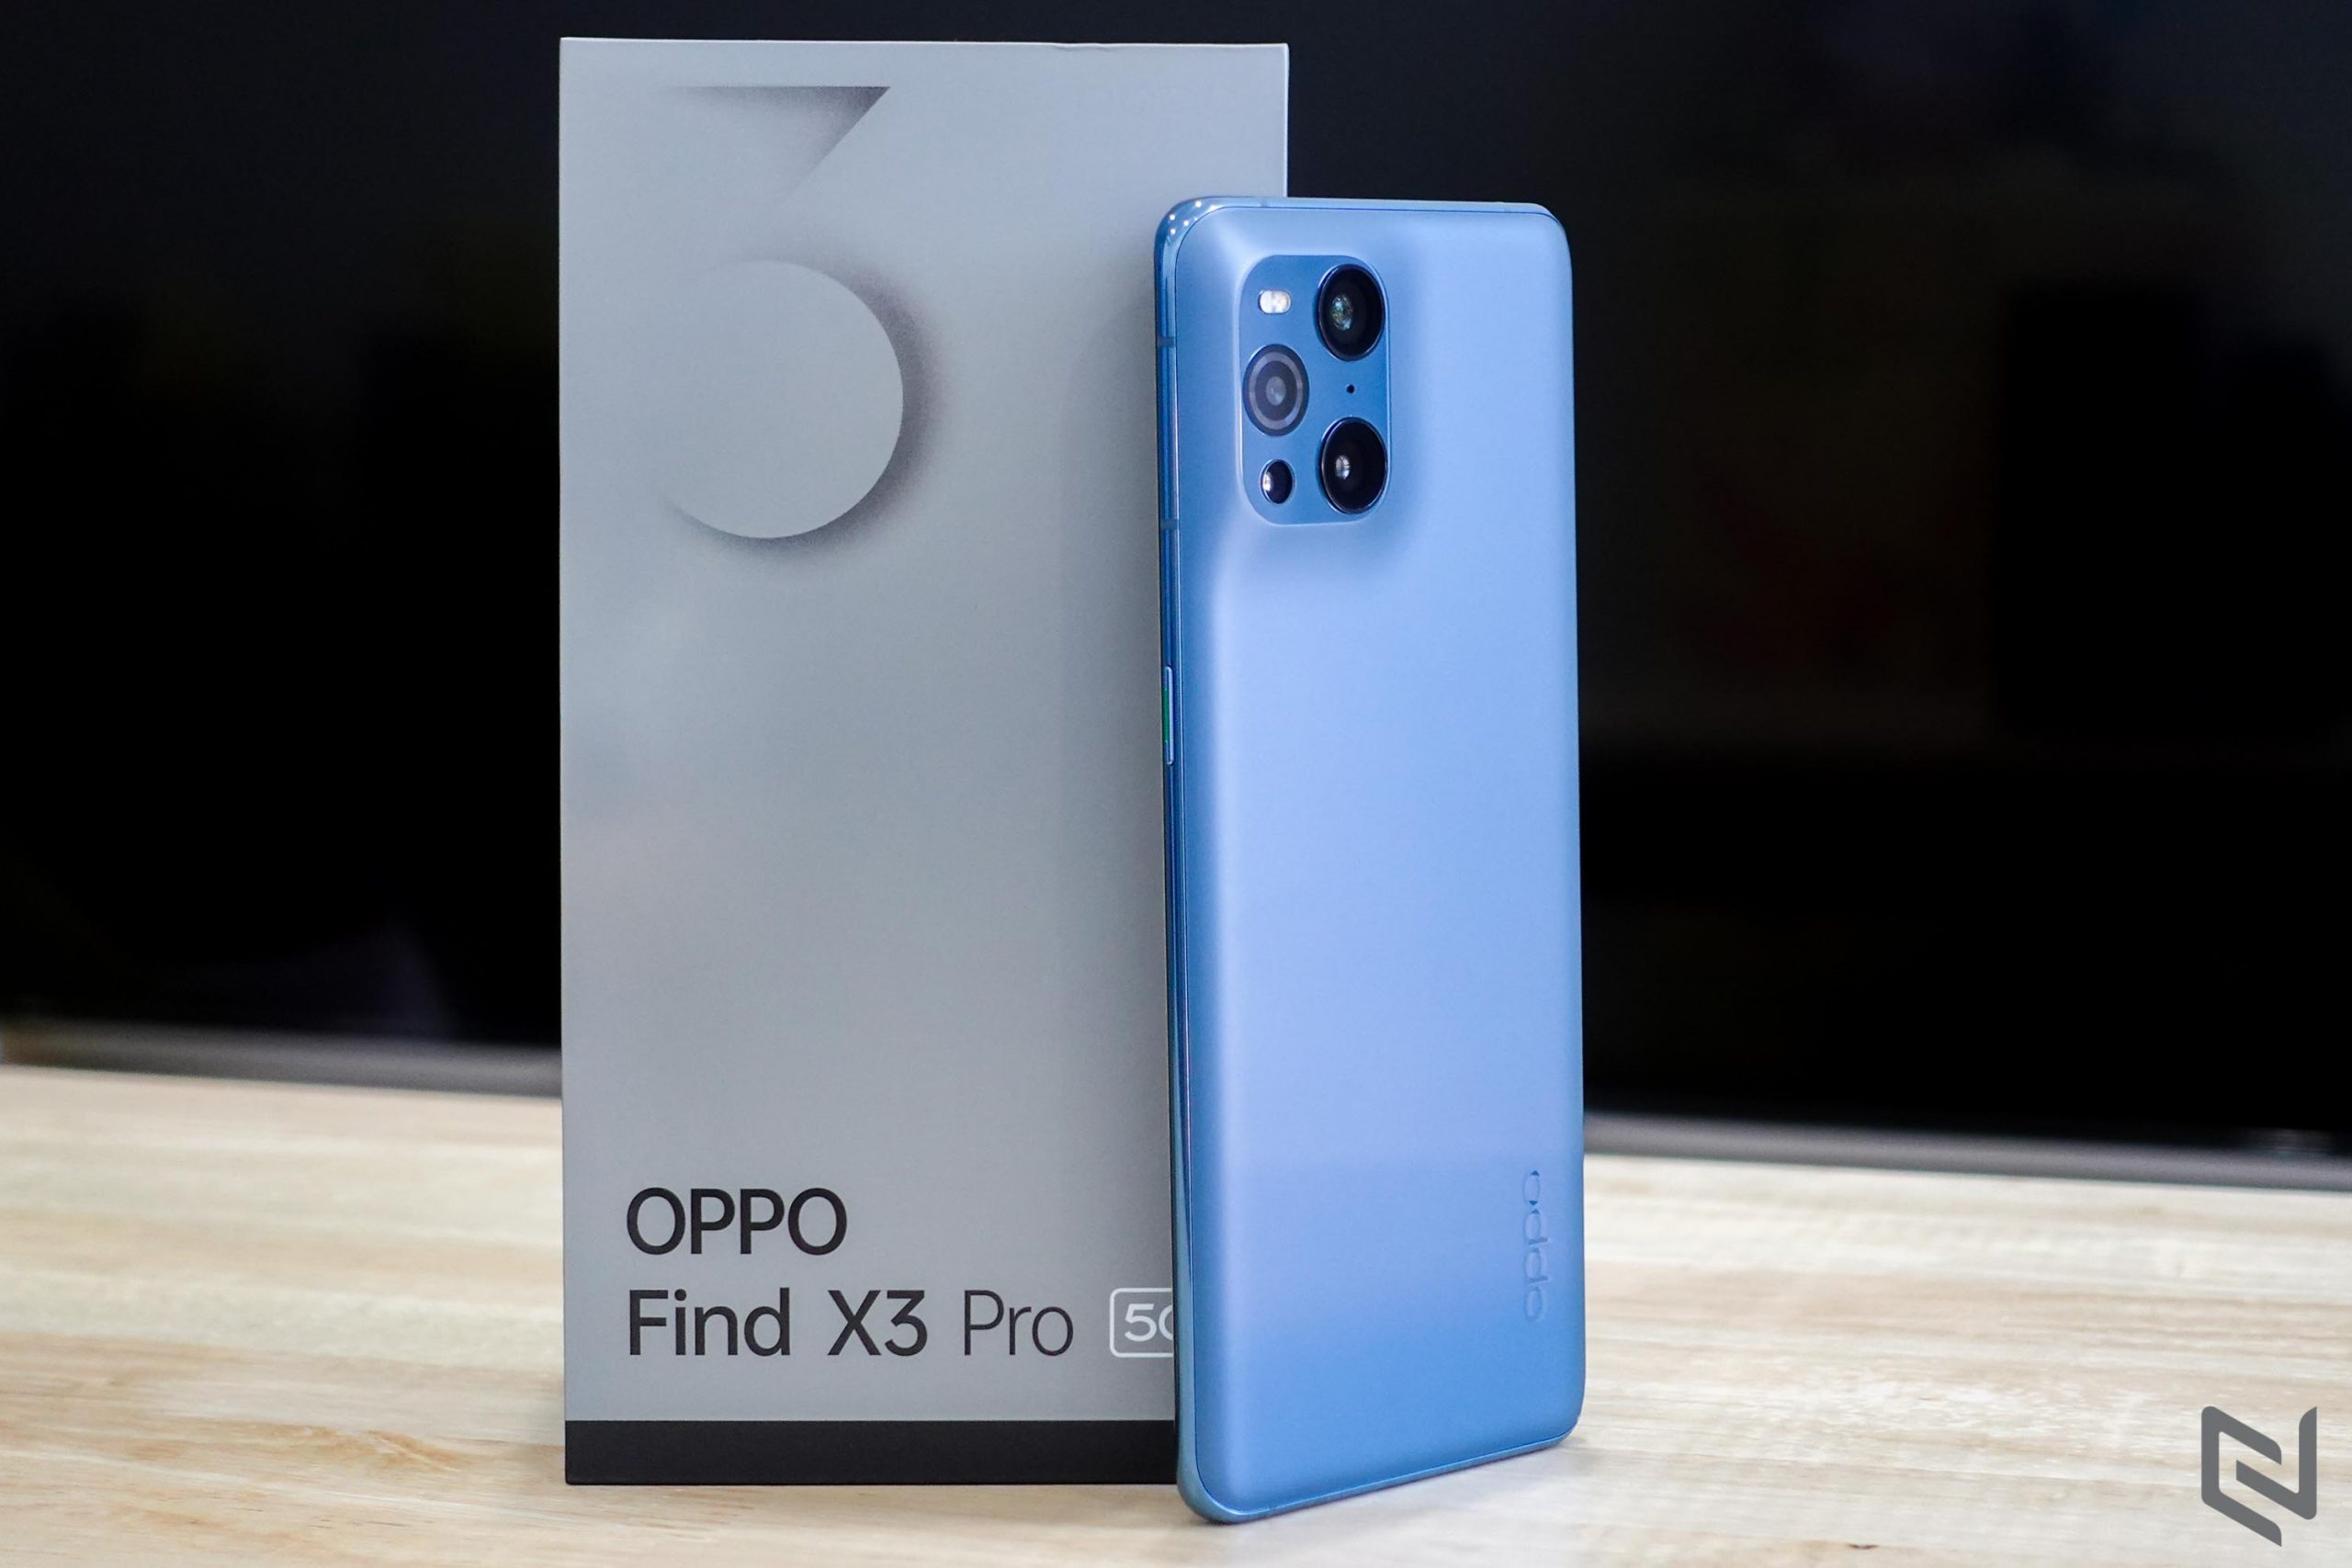 Mở hộp OPPO Find X3 Pro 5G: Tiên phong công nghệ nhiếp ảnh với thiết kế đến từ tương lai